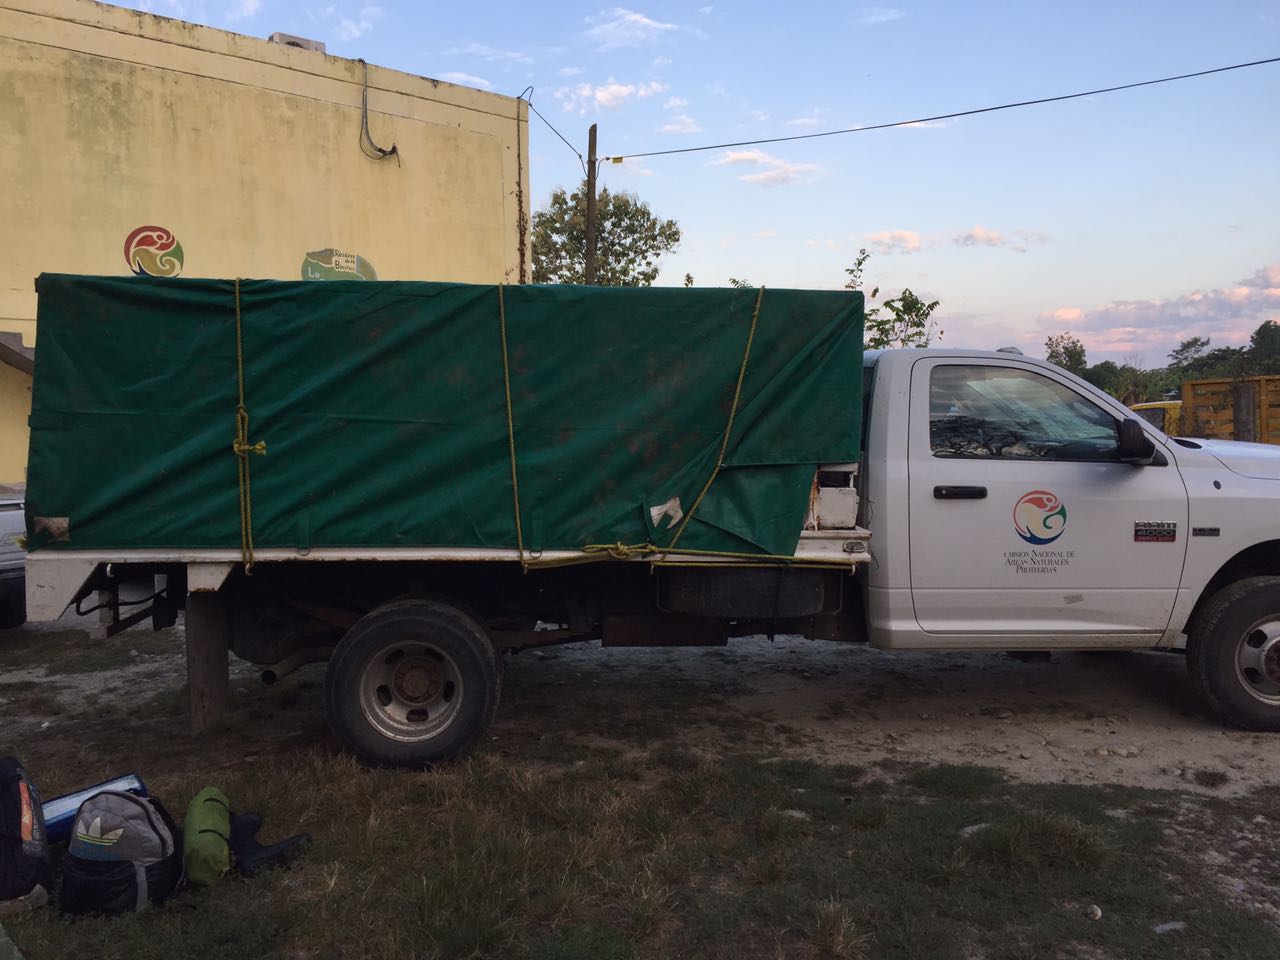 El cocodrilo fue transportado a las oficinas de la Reserva de la Biosfera la Encrucijada y hoy mismo será trasladado a una UMA (Unidad de Manejo Ambiental), del centro del estado de Chiapas.